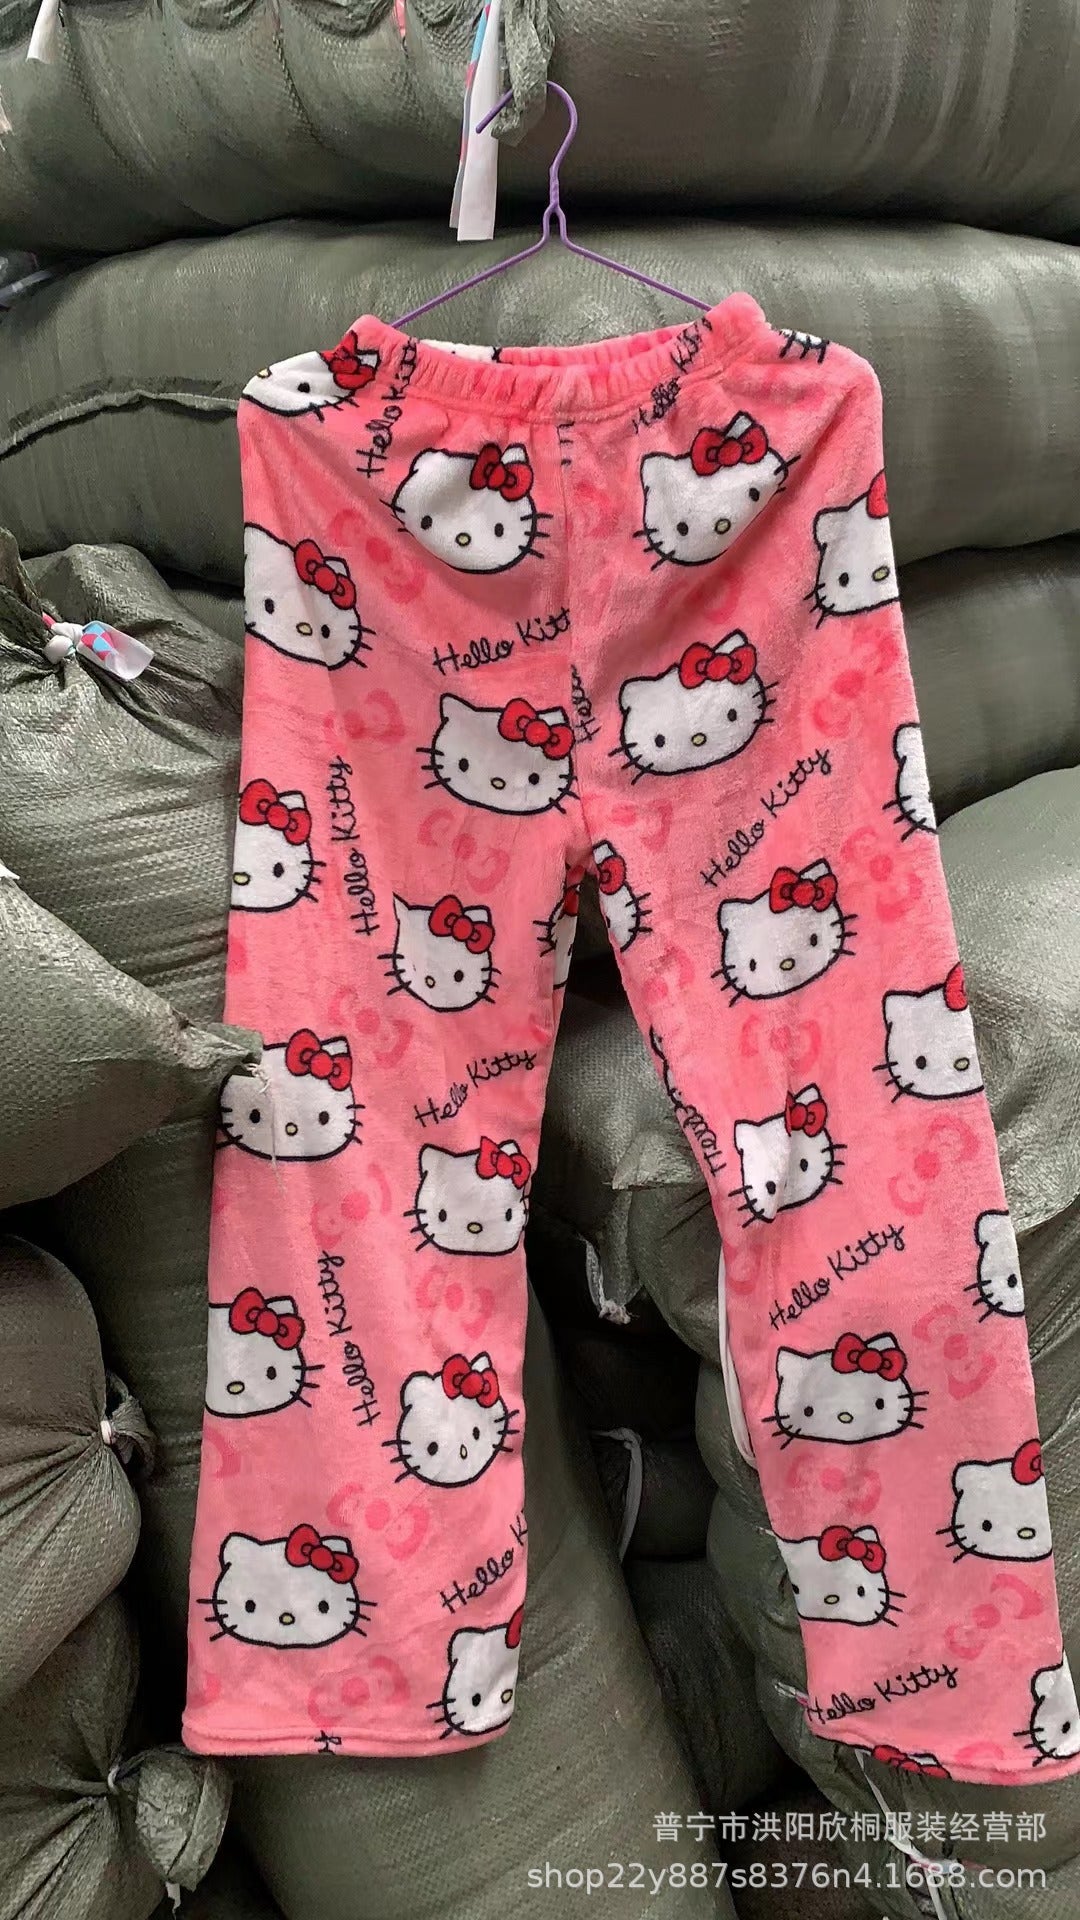 Pajamas hello kitty